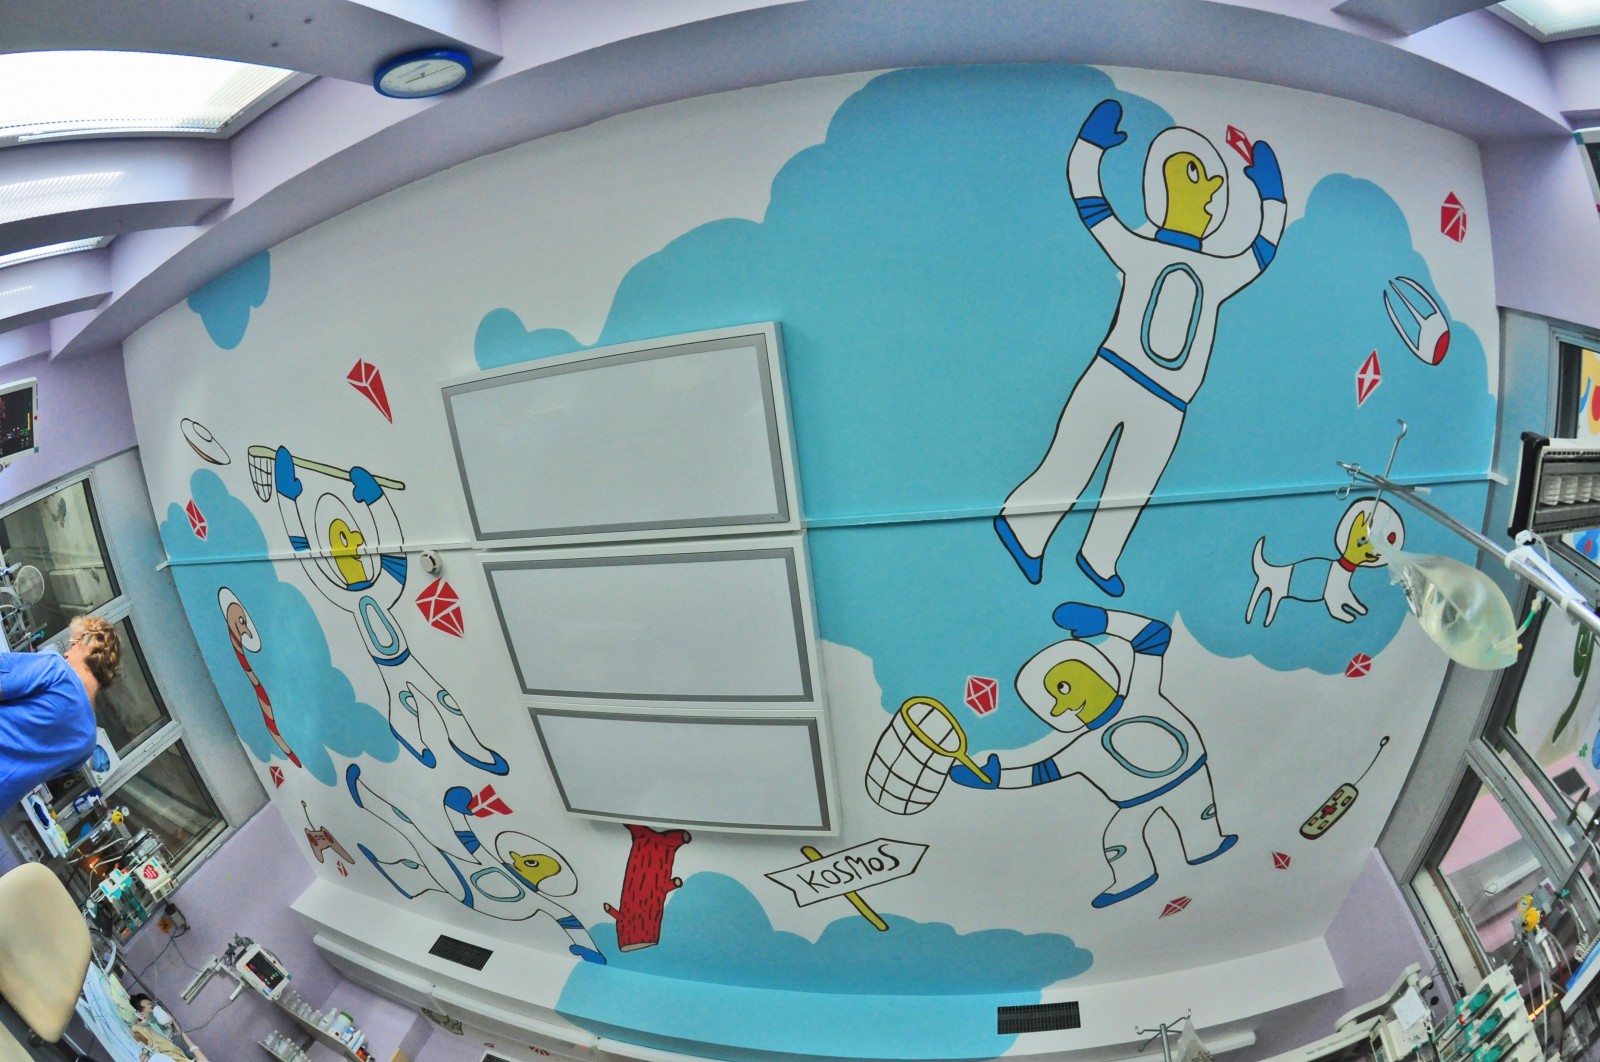 Warszawskie Centrum Zdrowia Dziecka Oddział Intensywnej Terapii murale pomalowane ściany | OP-Saal-Decke vom Kindergesundheitszentrum in Warschau | CSR | O nas